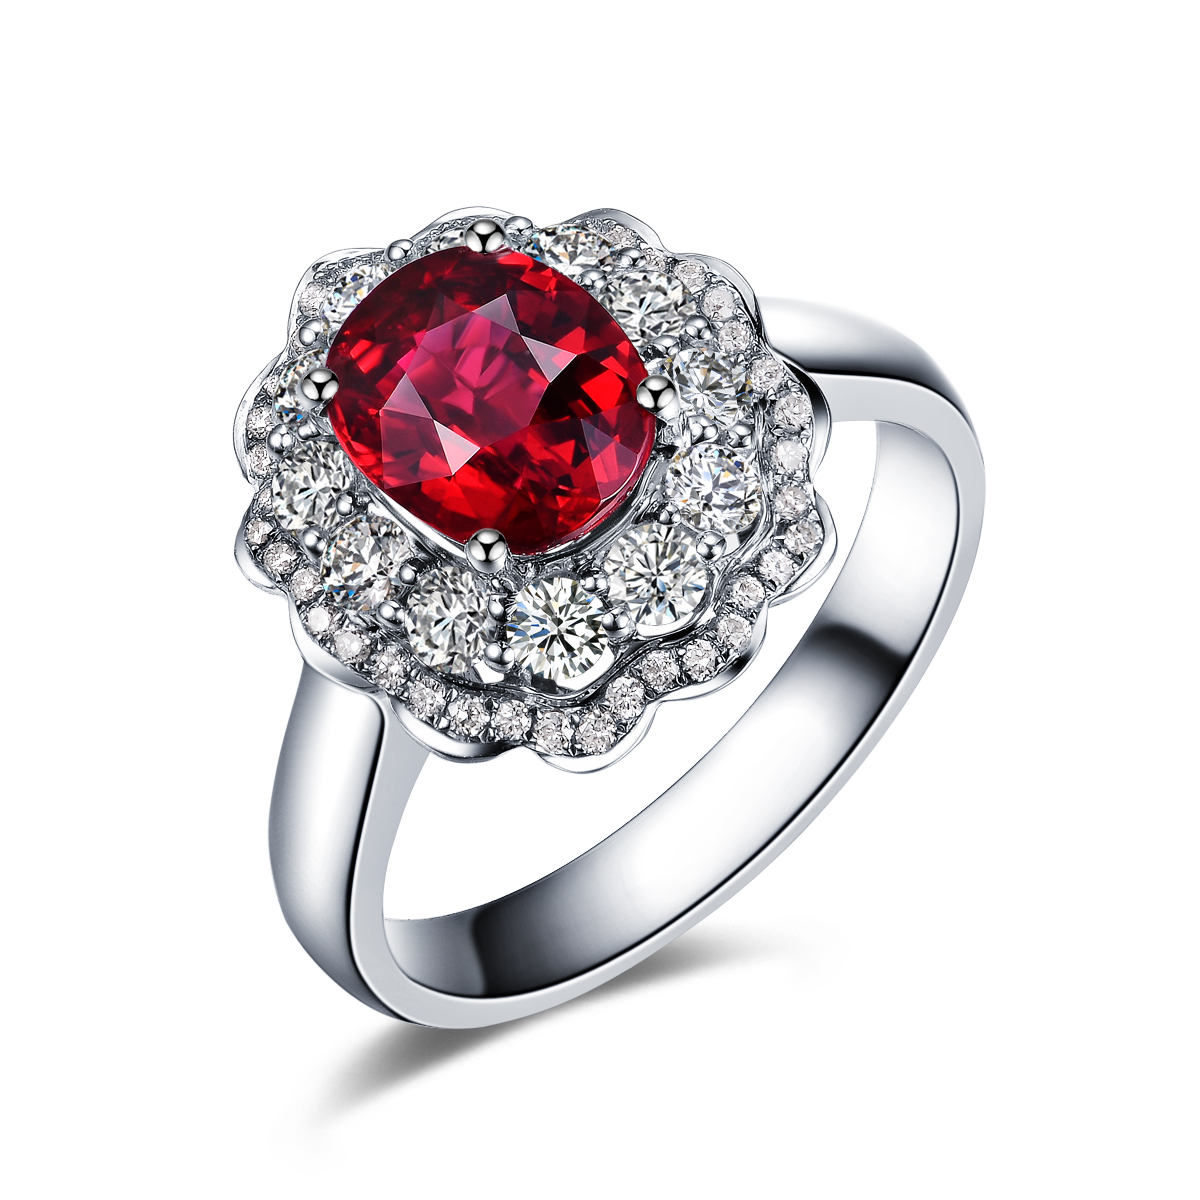 红宝石的价格高吗？求婚用红宝石的戒指好吗？